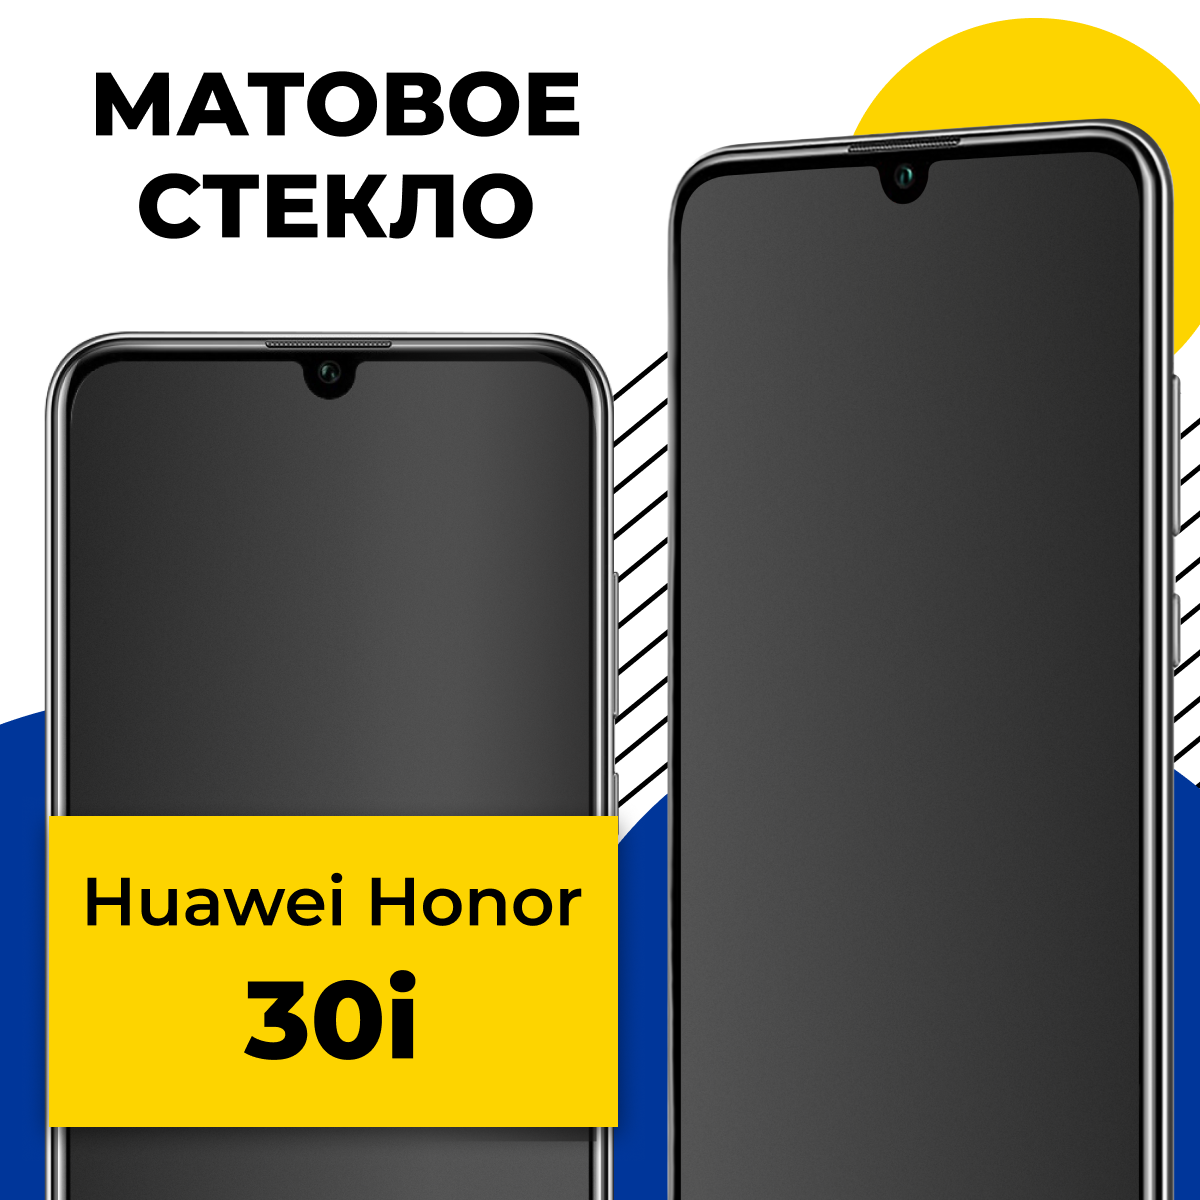 Матовое защитное стекло для телефона Huawei Honor 30i / Противоударное закаленное стекло 2.5D на смартфон Хуавей Хонор 30 Ай с олеофобным покрытием